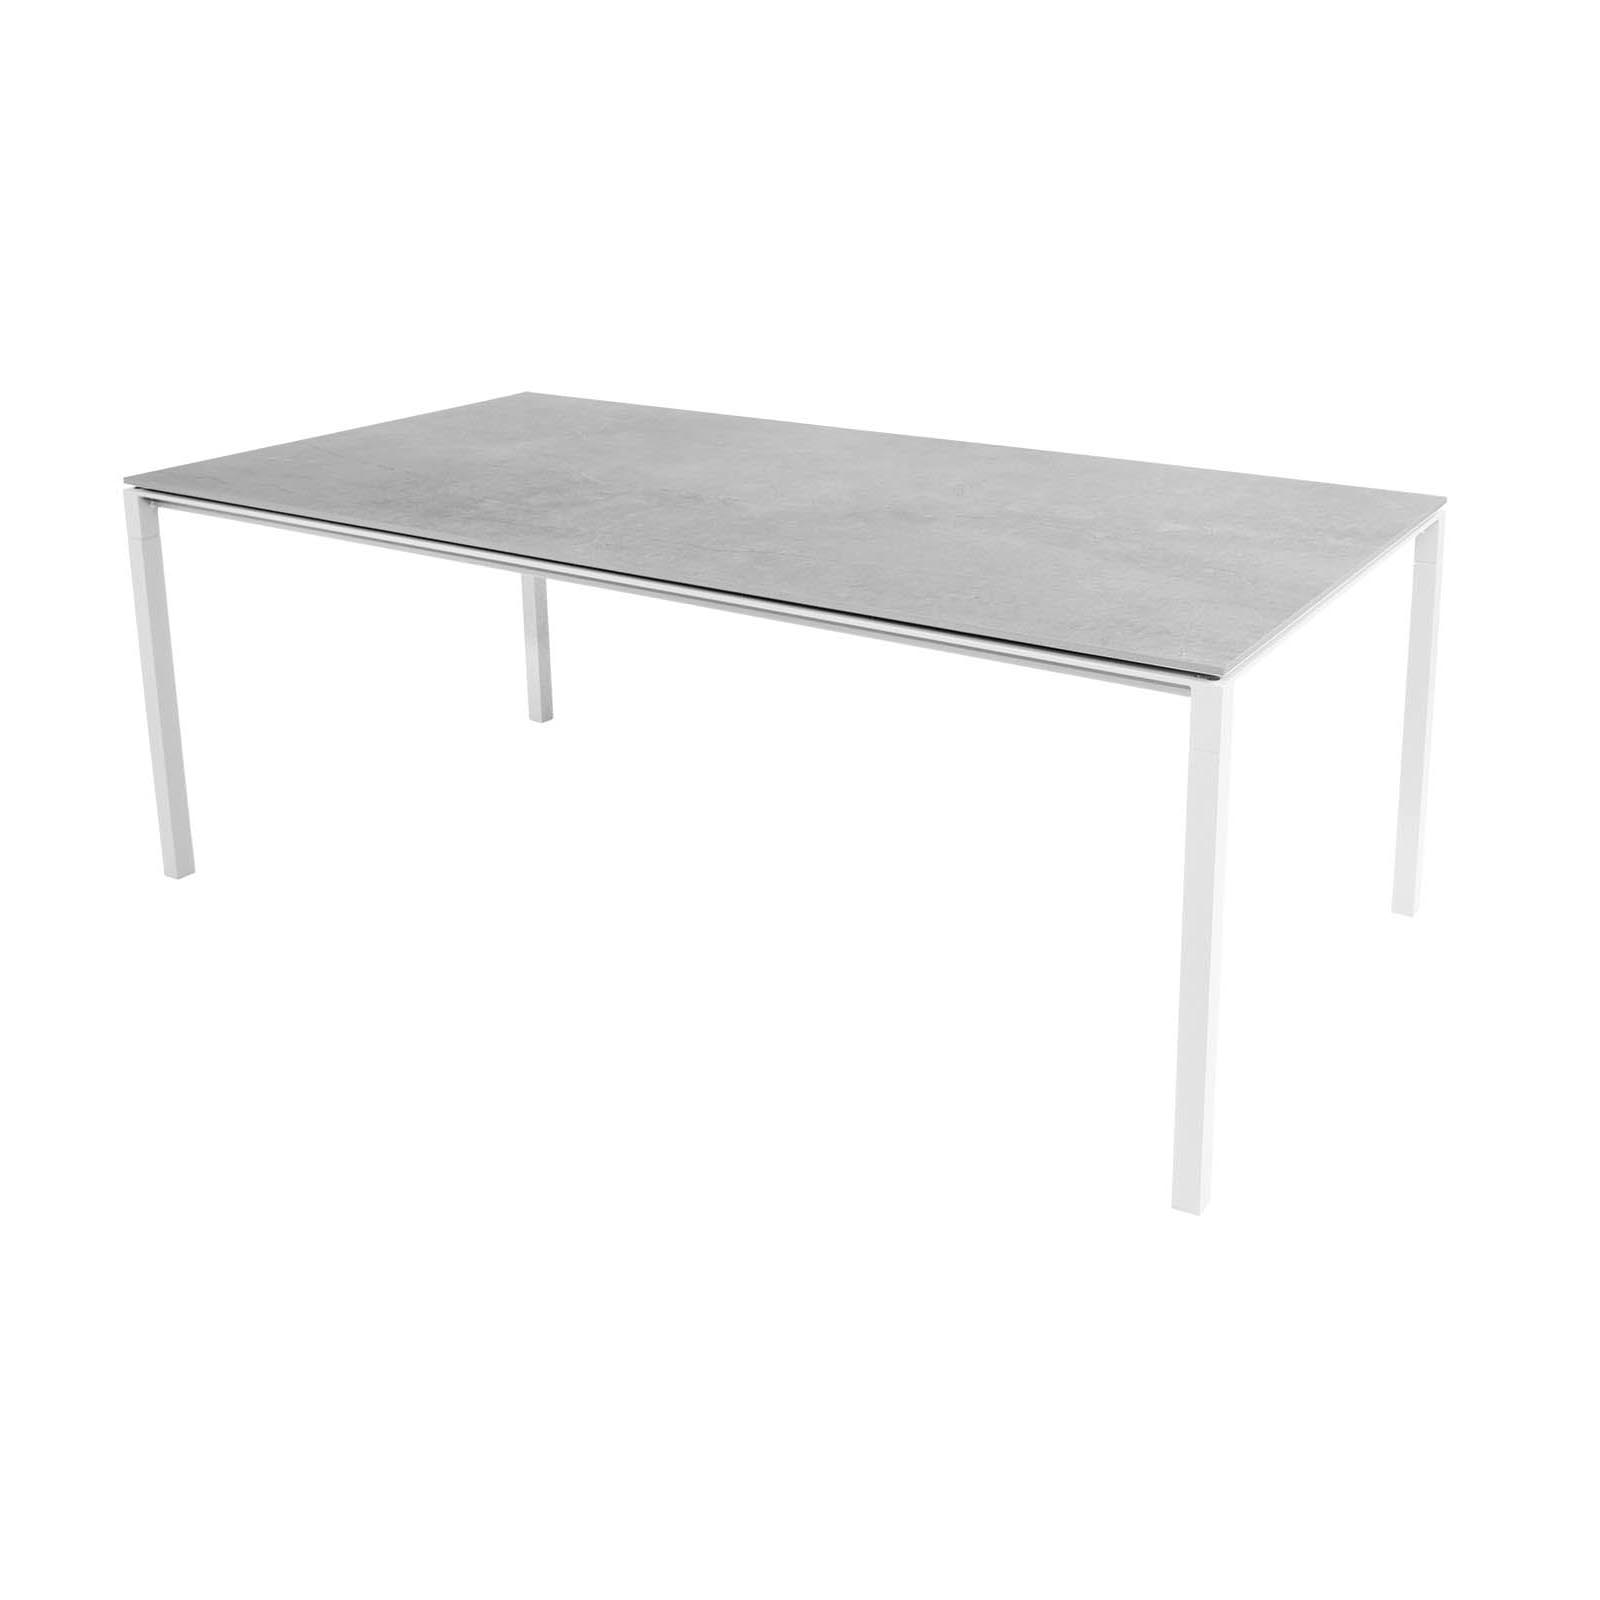 Pure Tisch in 200x100 cm aus Aluminium in White mit Tischplatte aus Ceramic in Fossil grey